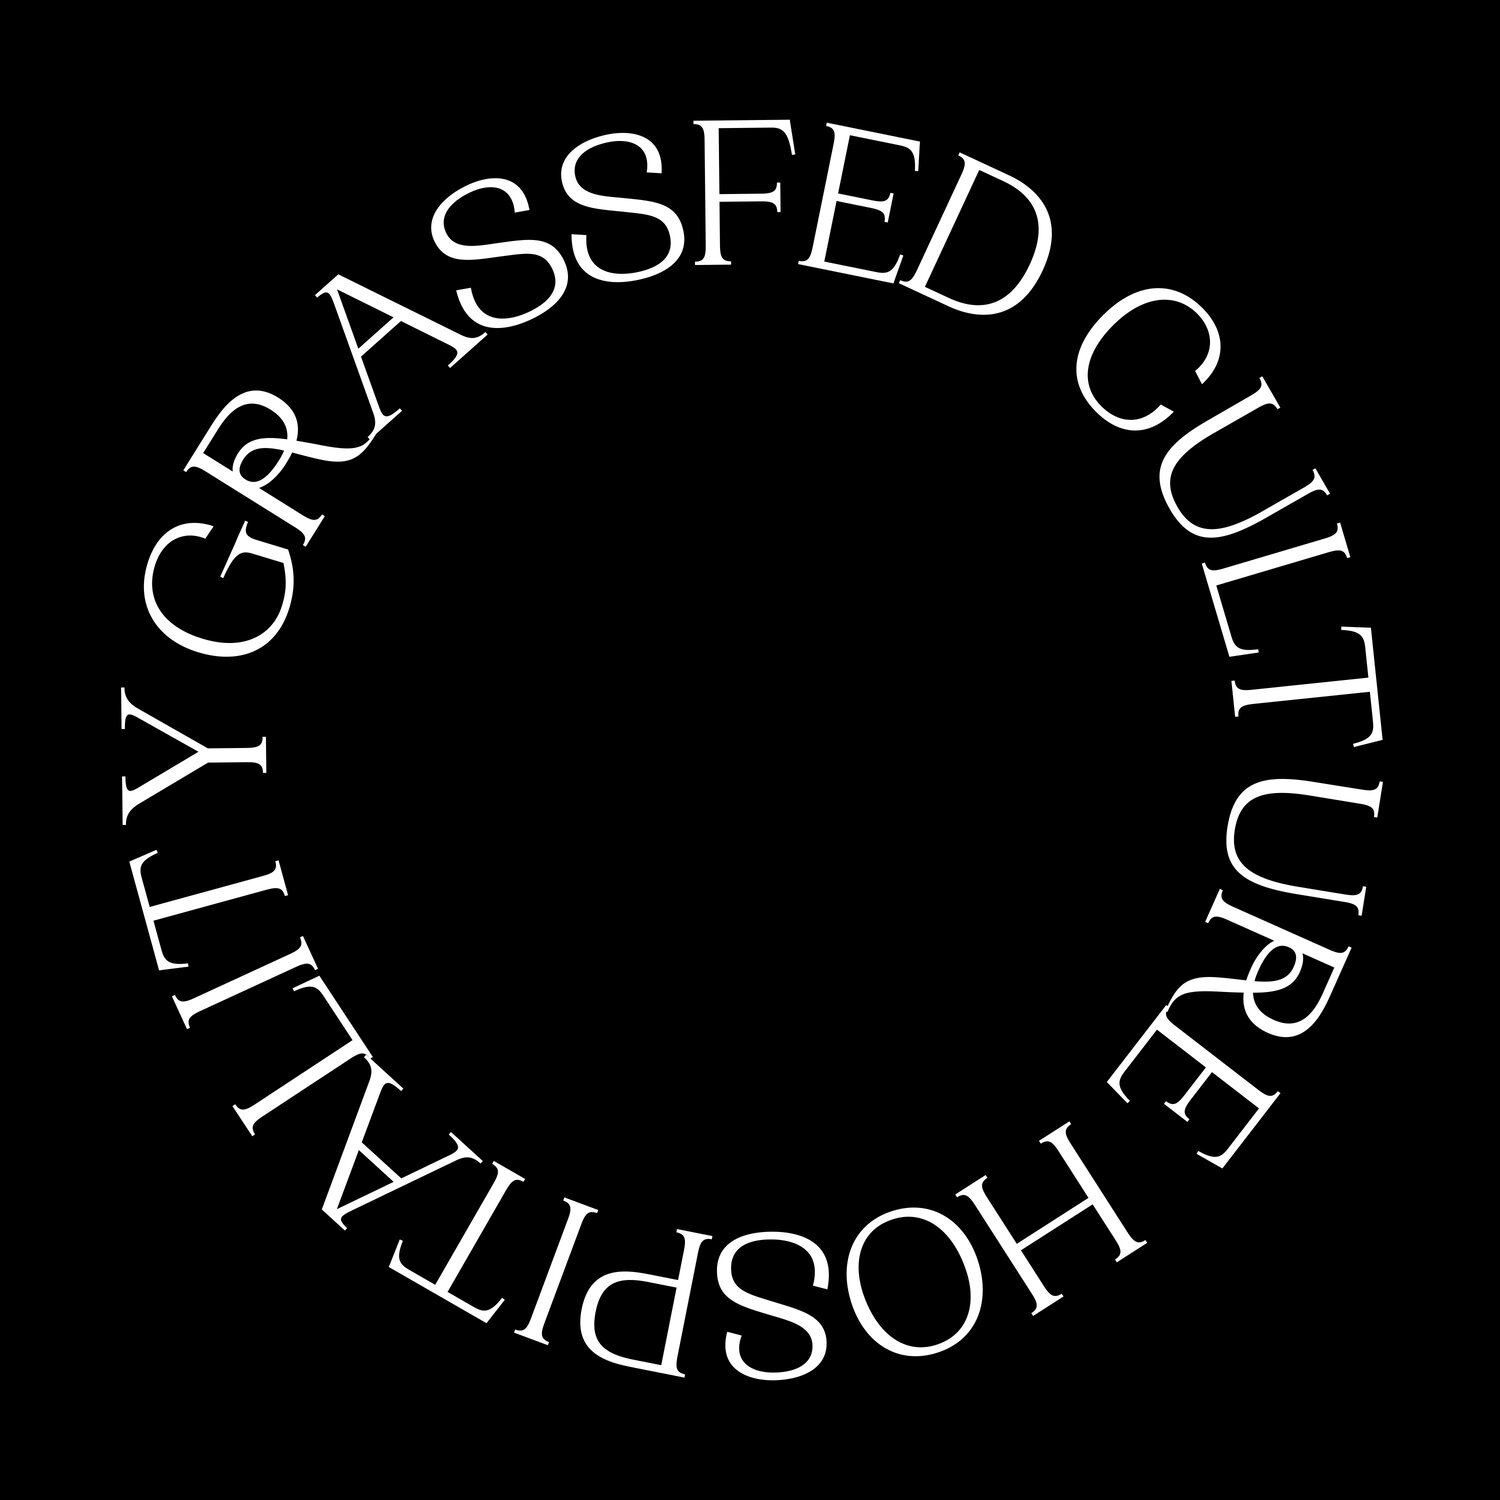 www.grassfedculture.com